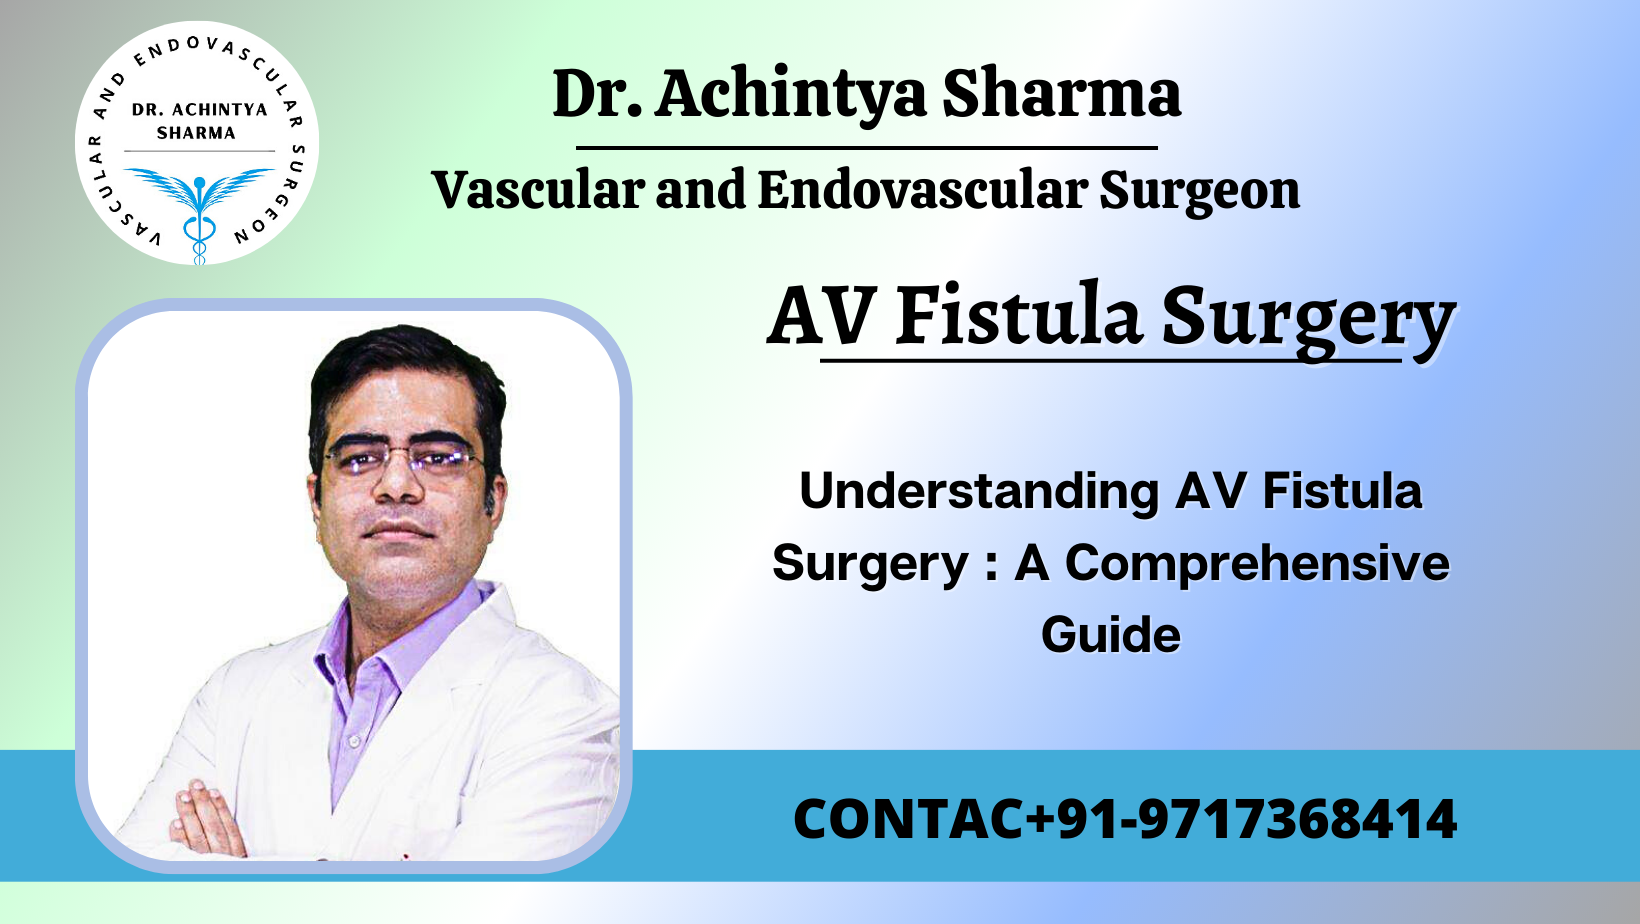 Understanding AV Fistula Surgery: A Comprehensive Guide